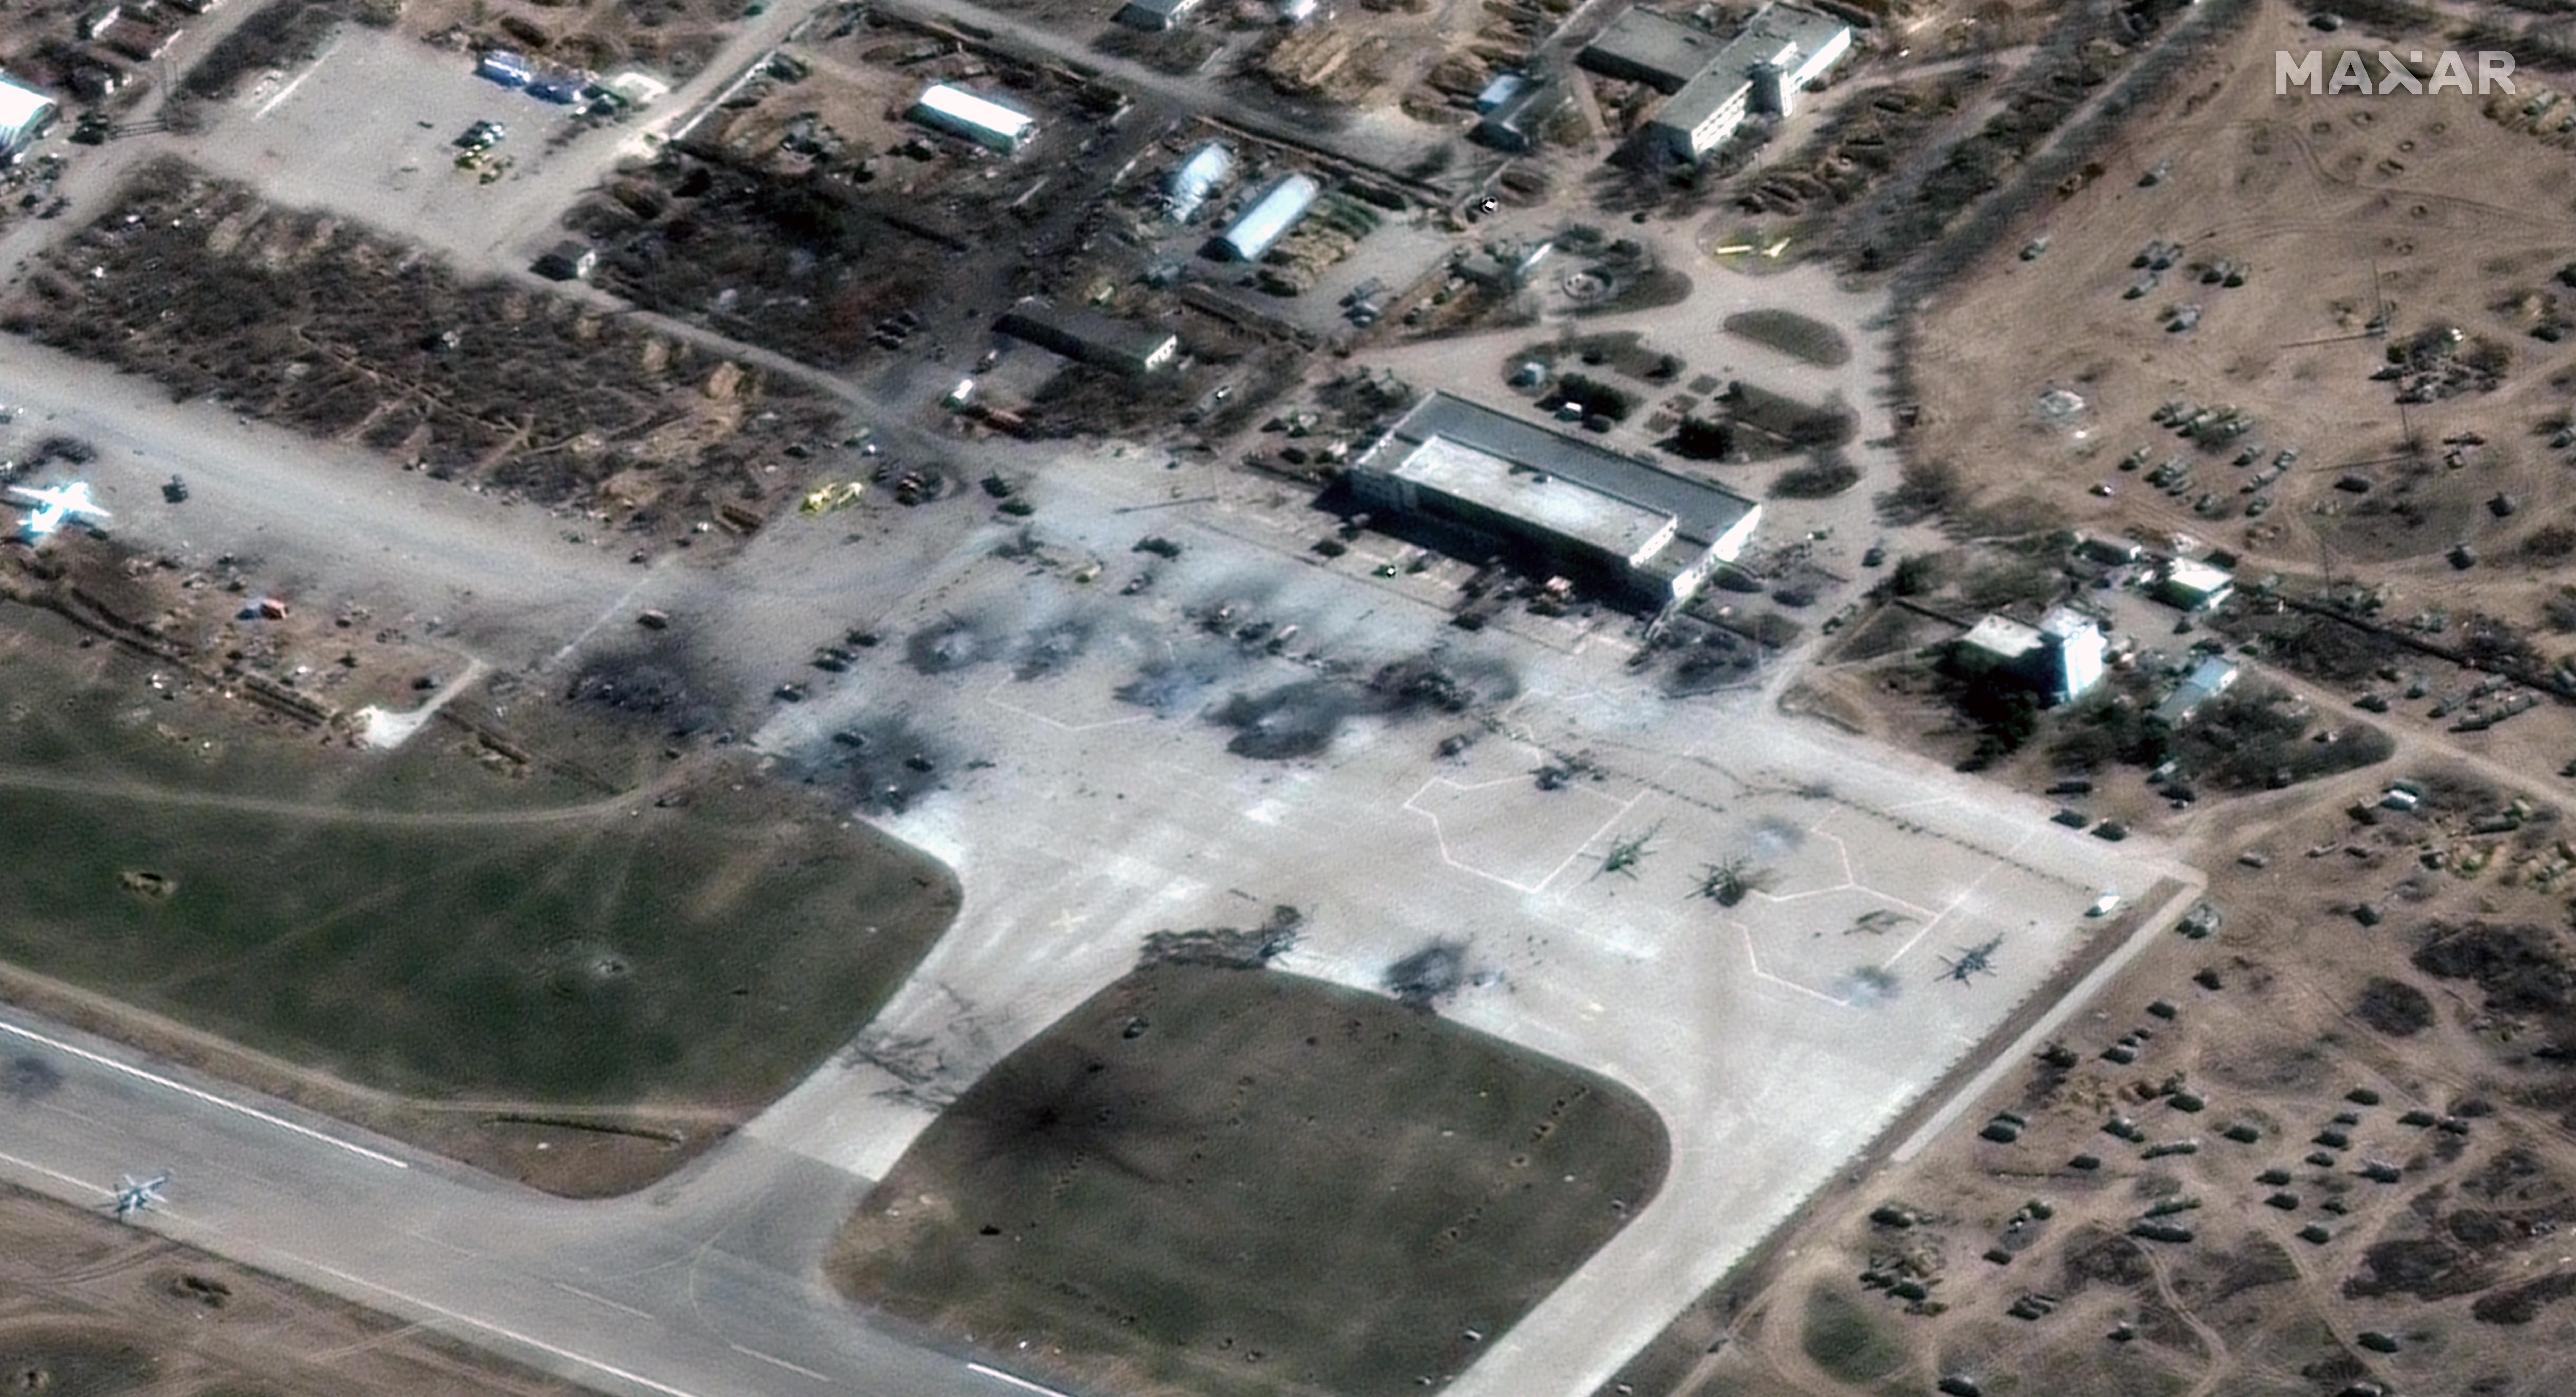 Una imagen satelital proporcionada por Maxar Technologies muestra helicópteros rusos destruidos en la pista de un aeródromo en Jersón, Ucrania, el miércoles 16 de marzo de 2022. (Imagen satelital ©️2022 Maxar Technologies vía The New York Times)